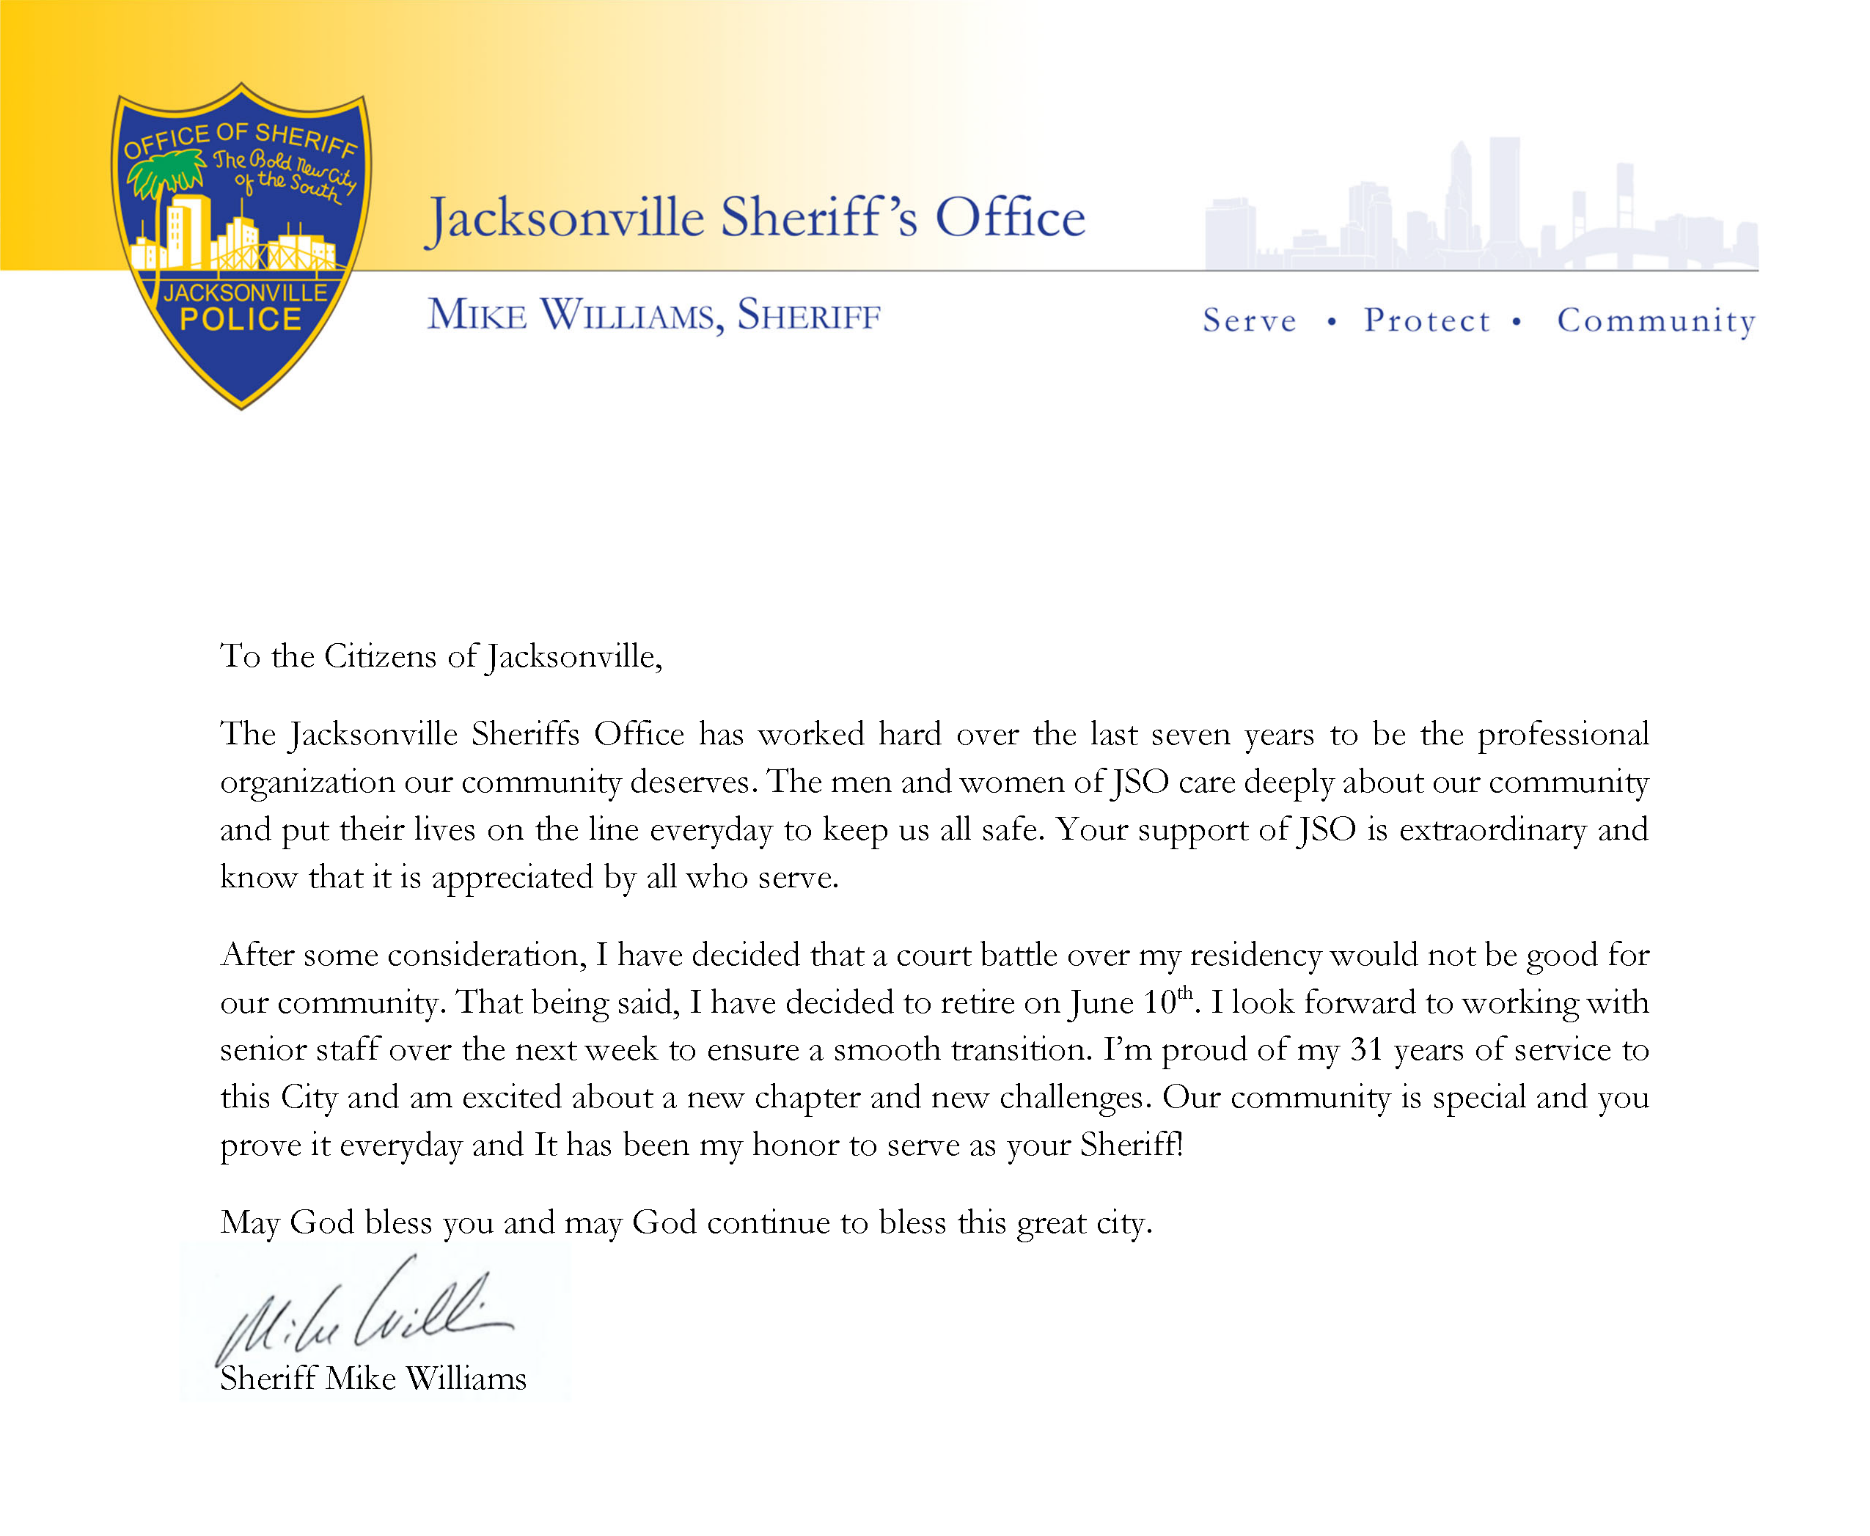 Jacksonville Sheriff Mike Williams' resignation letter.